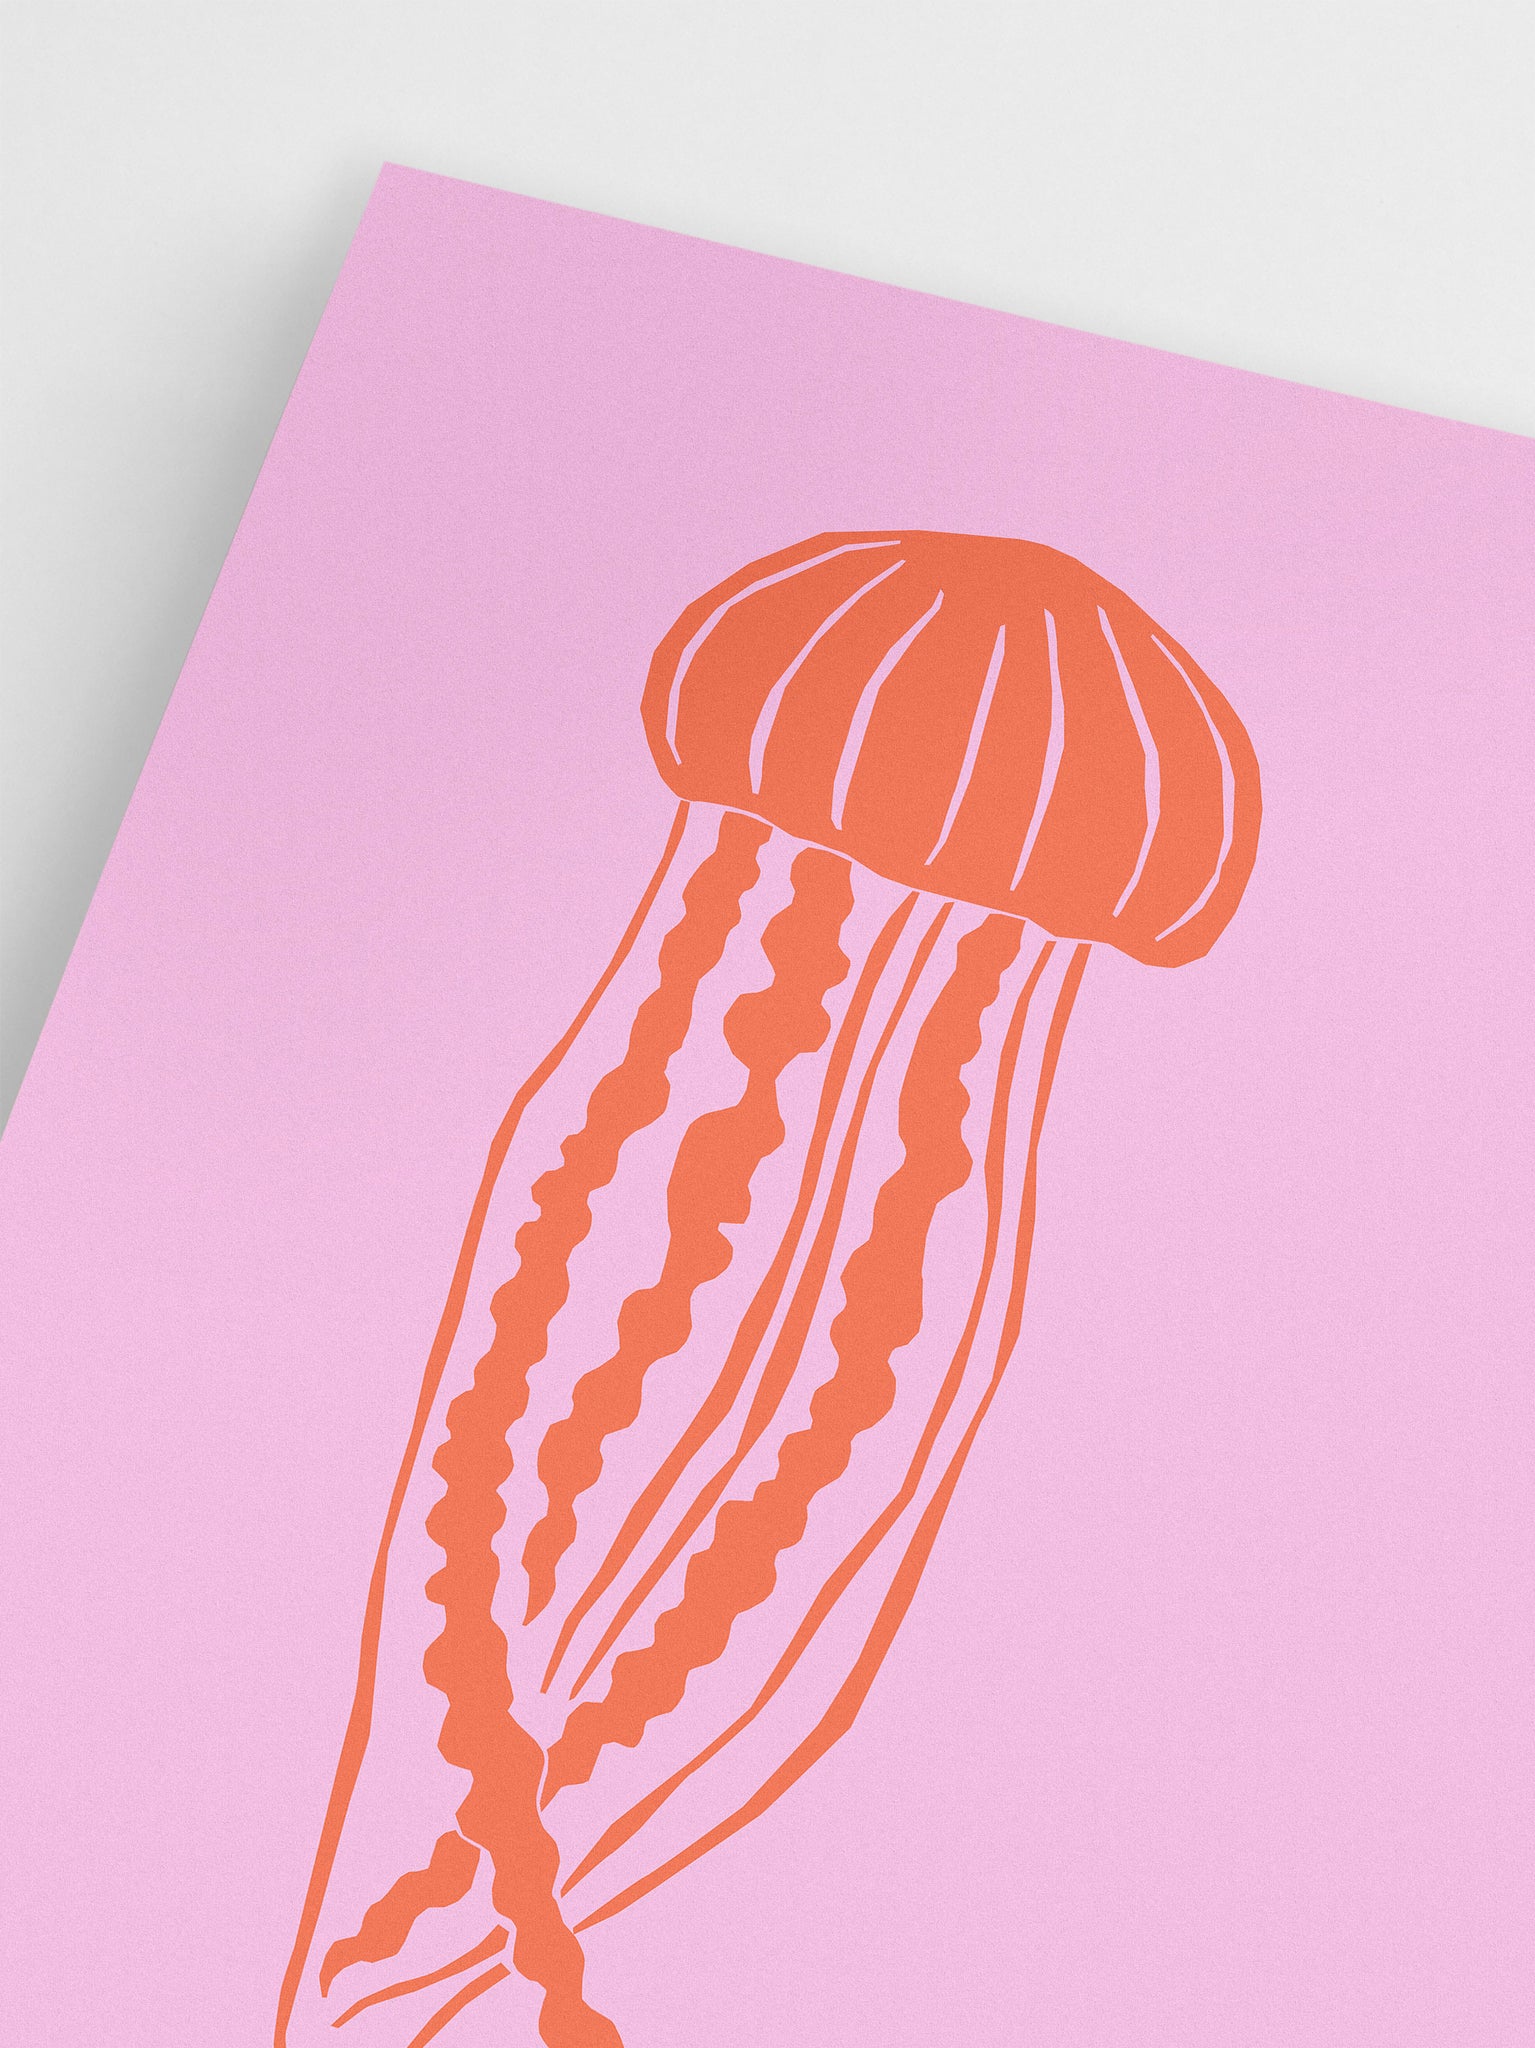 Ocean Life: Jellyfish Poster